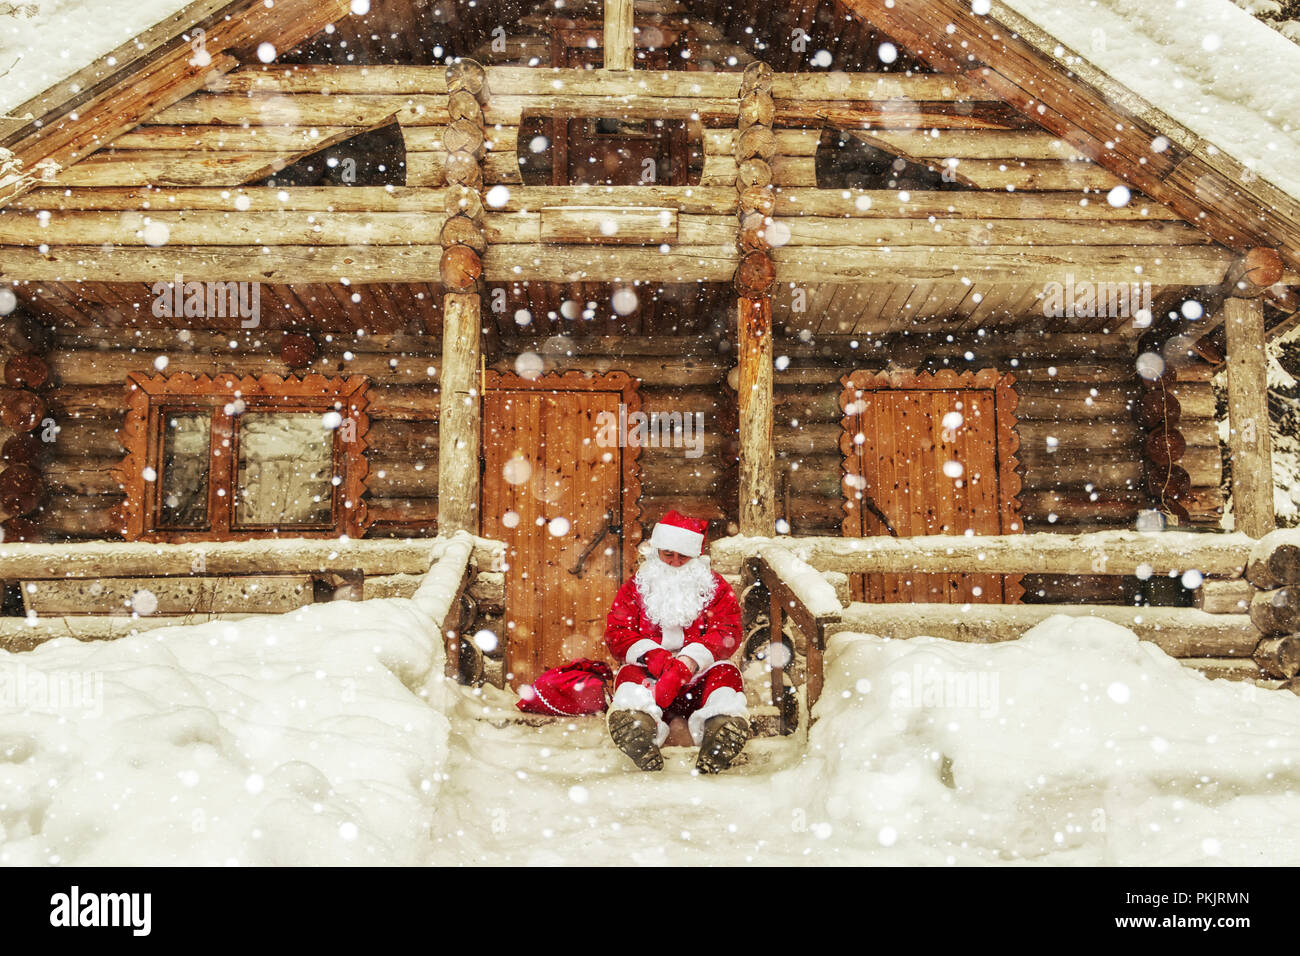 Santa Claus Casa Di Babbo Natale.La Vita Quotidiana Di Santa Claus Casa Di Babbo Natale Al Polo Nord Foto Stock Alamy